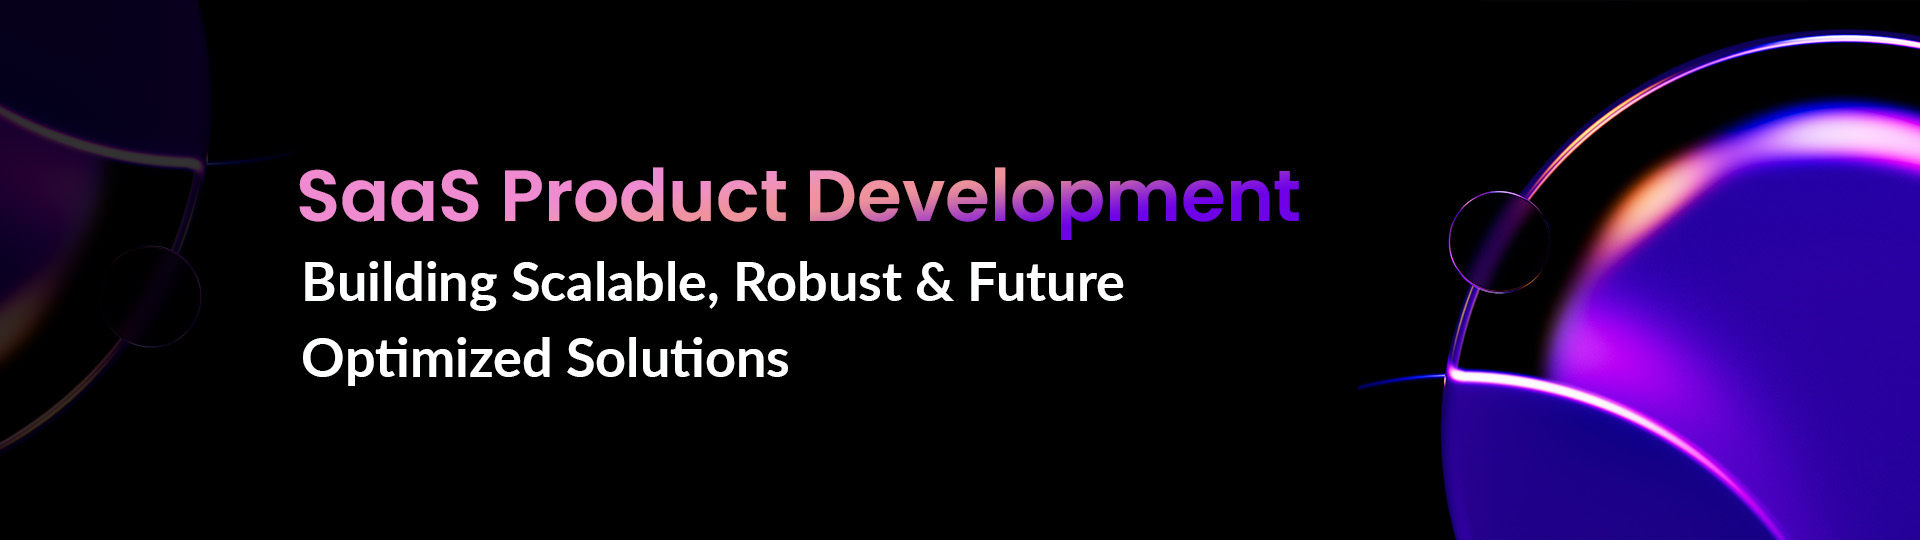 enterprise product development solutions